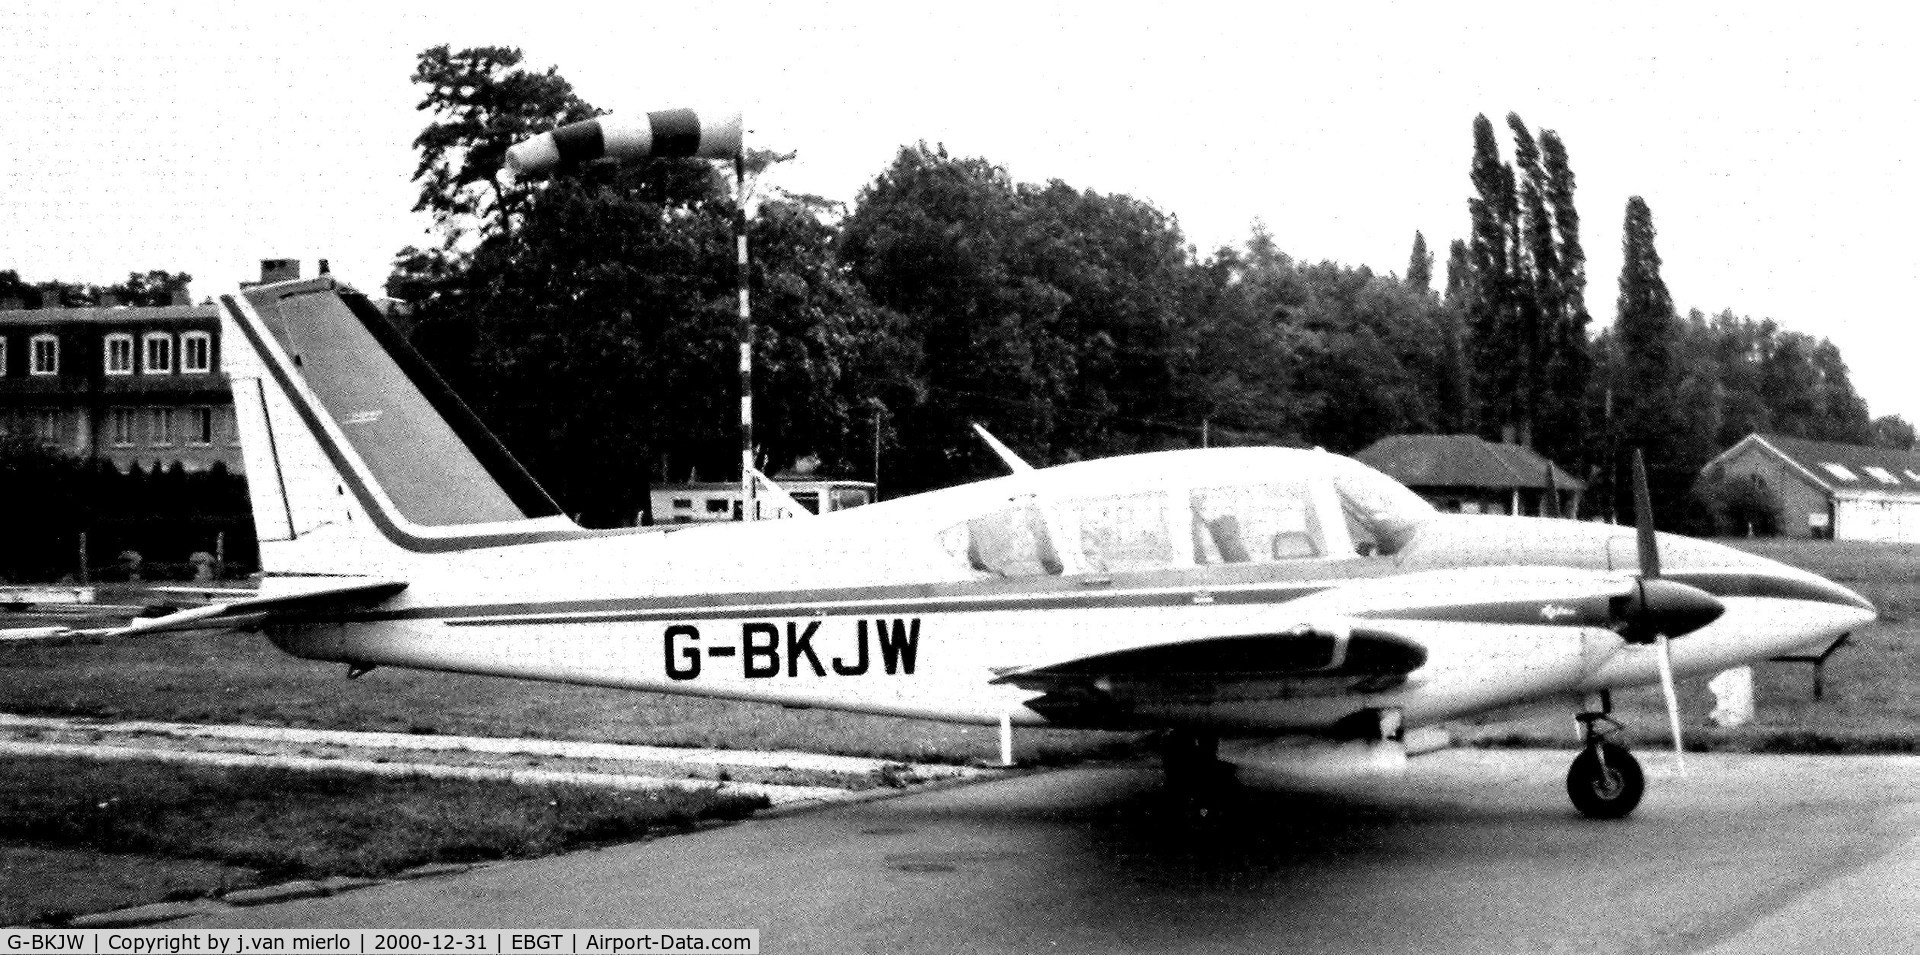 G-BKJW, 1971 Piper PA-23-250 Aztec C/N 27-4716, Ghent, Belgium